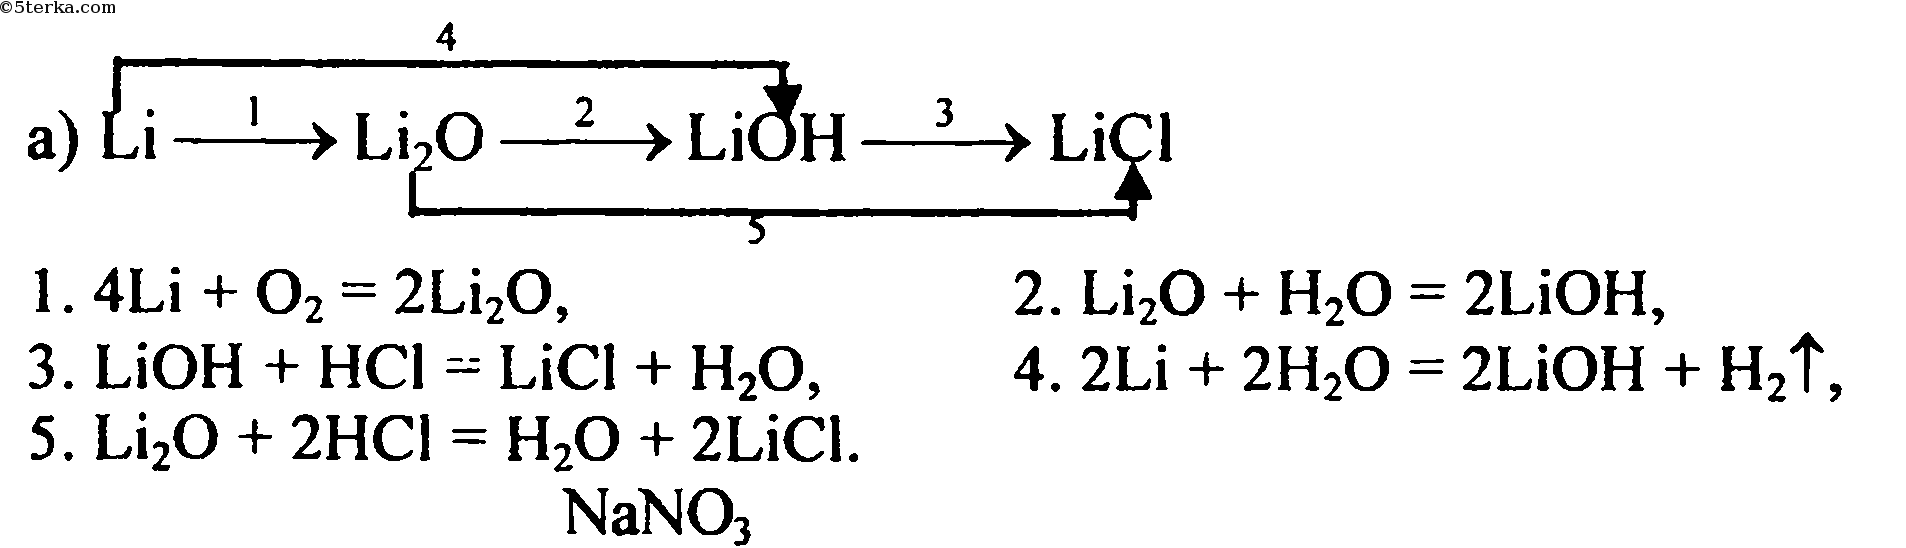 К генетическому ряду неметаллов относят цепочки лития. Цепи превращений химия литий. Цепочка превращений лития. Химия цепочка реакций литий. Схема превращений. Уравнения реакций.